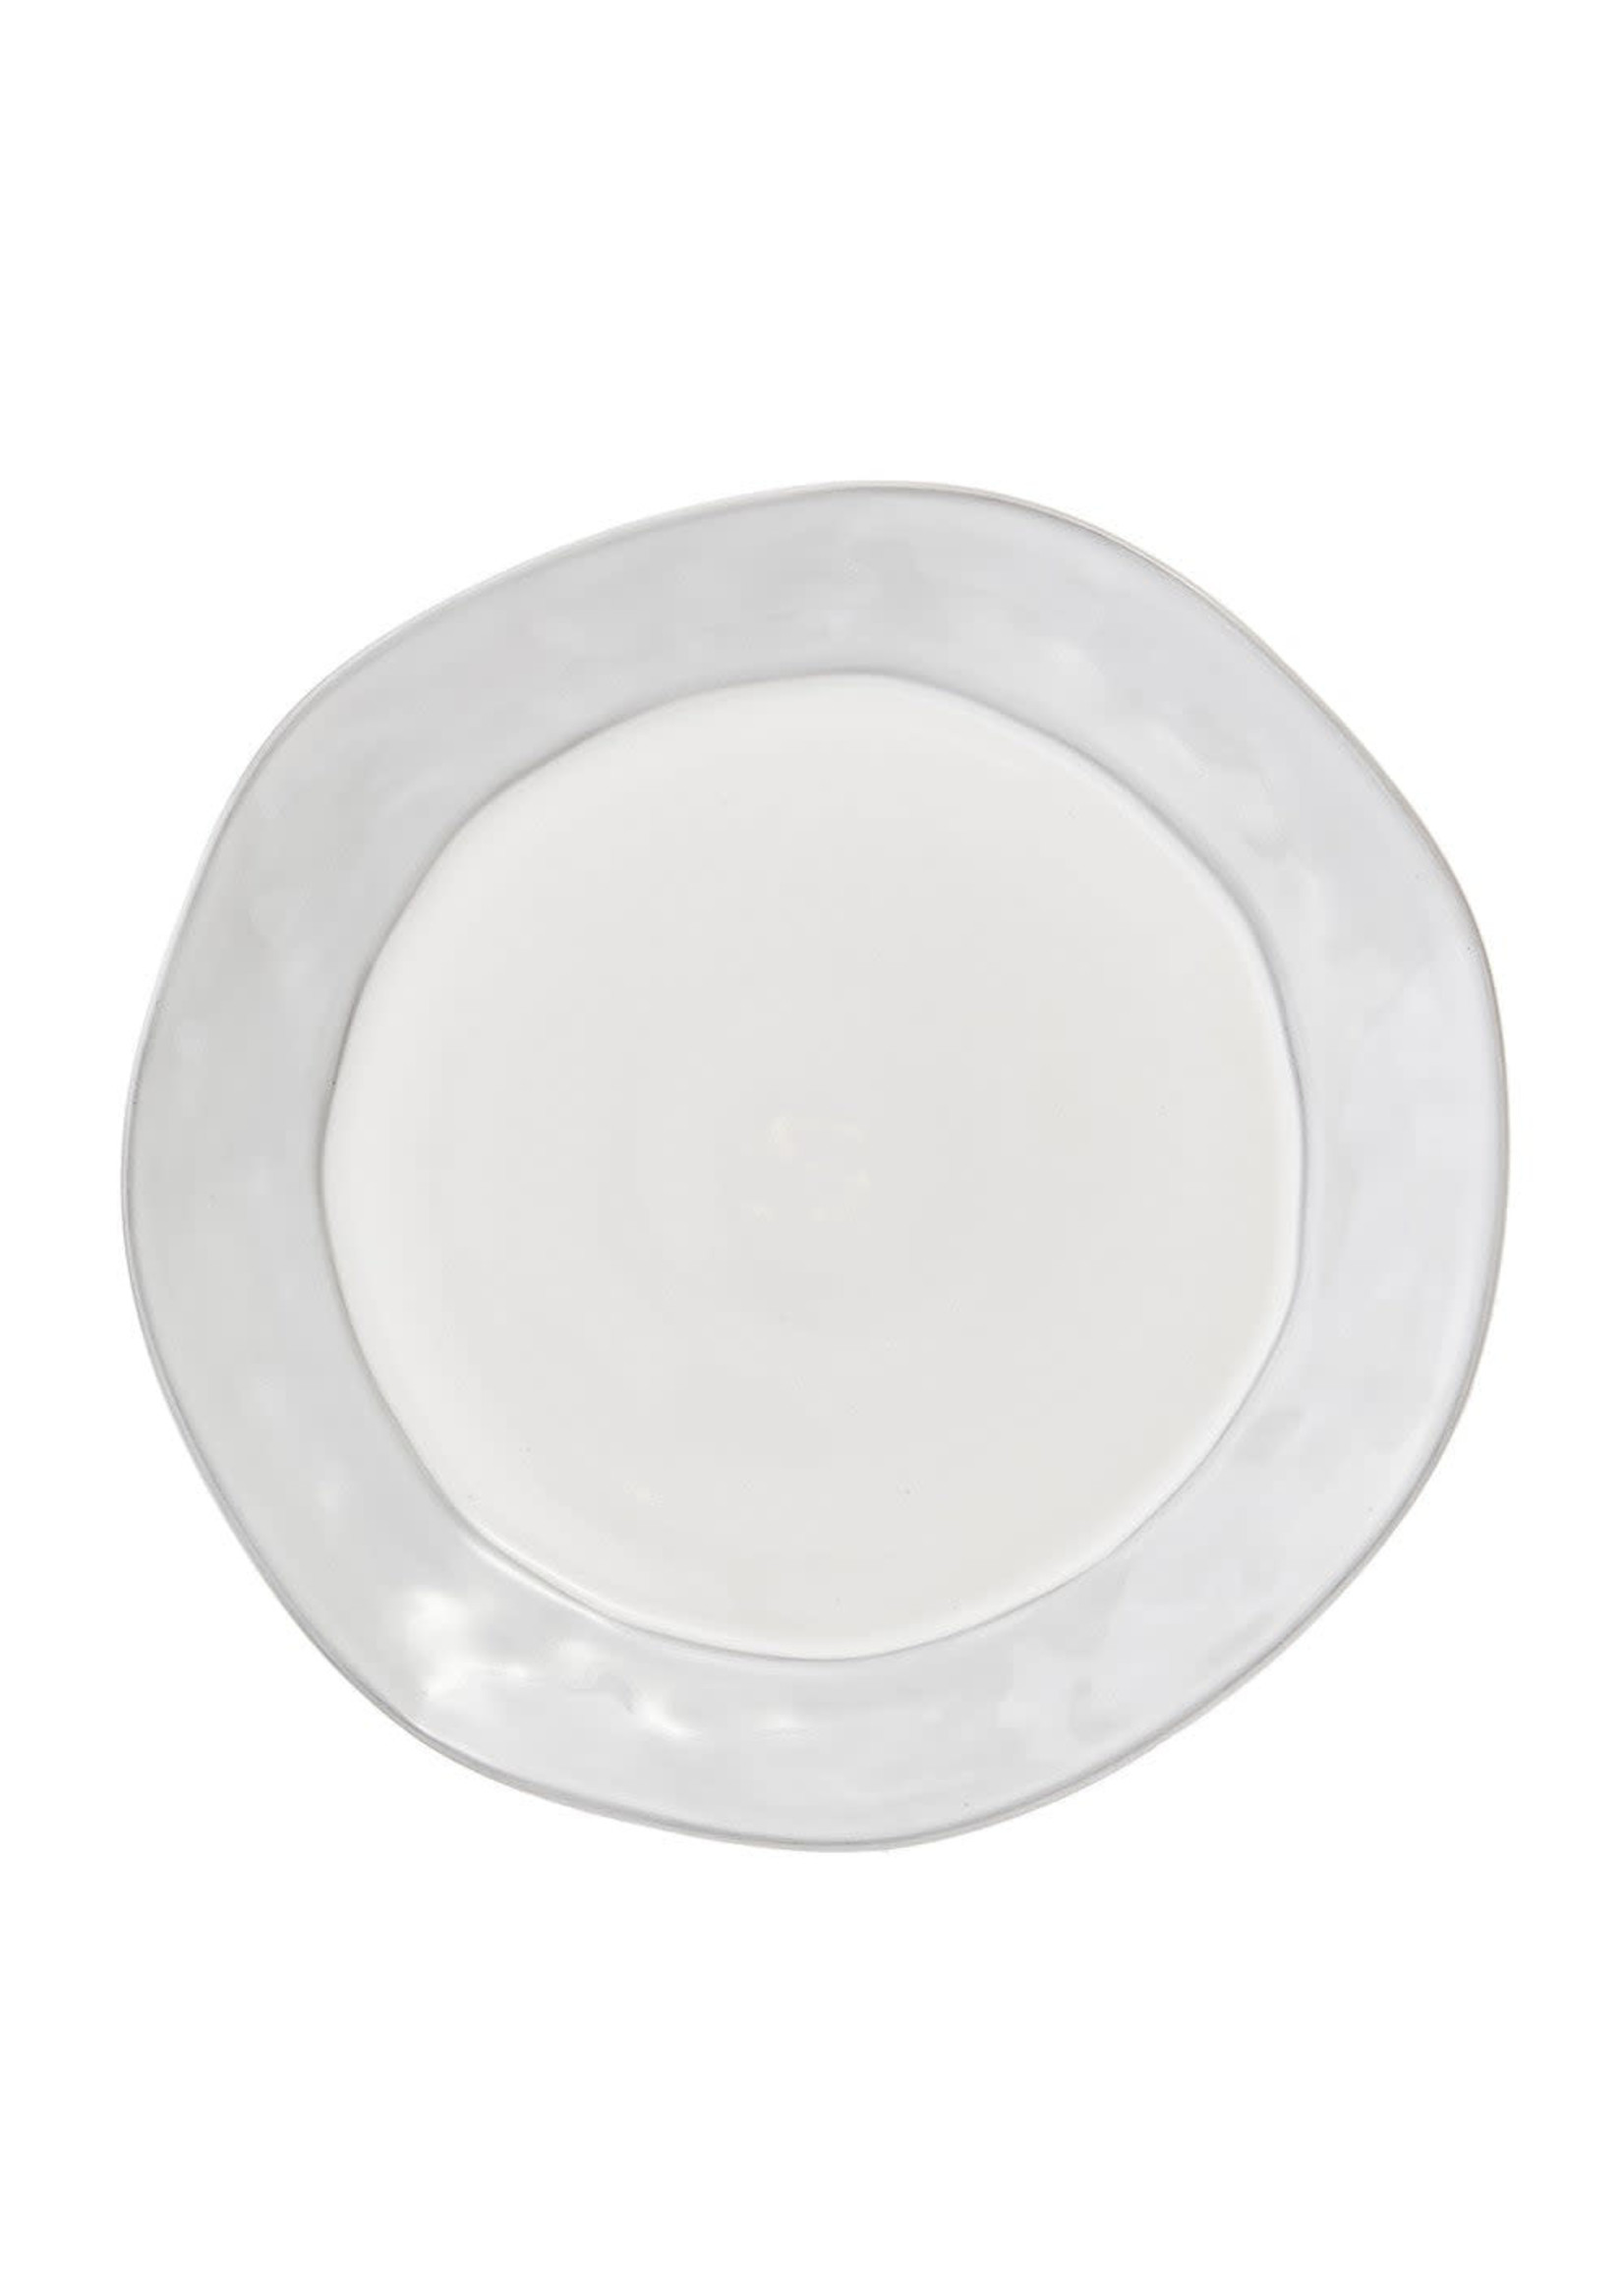 Skyros Skyros Azores Dinner Plate, Greige Shimmer